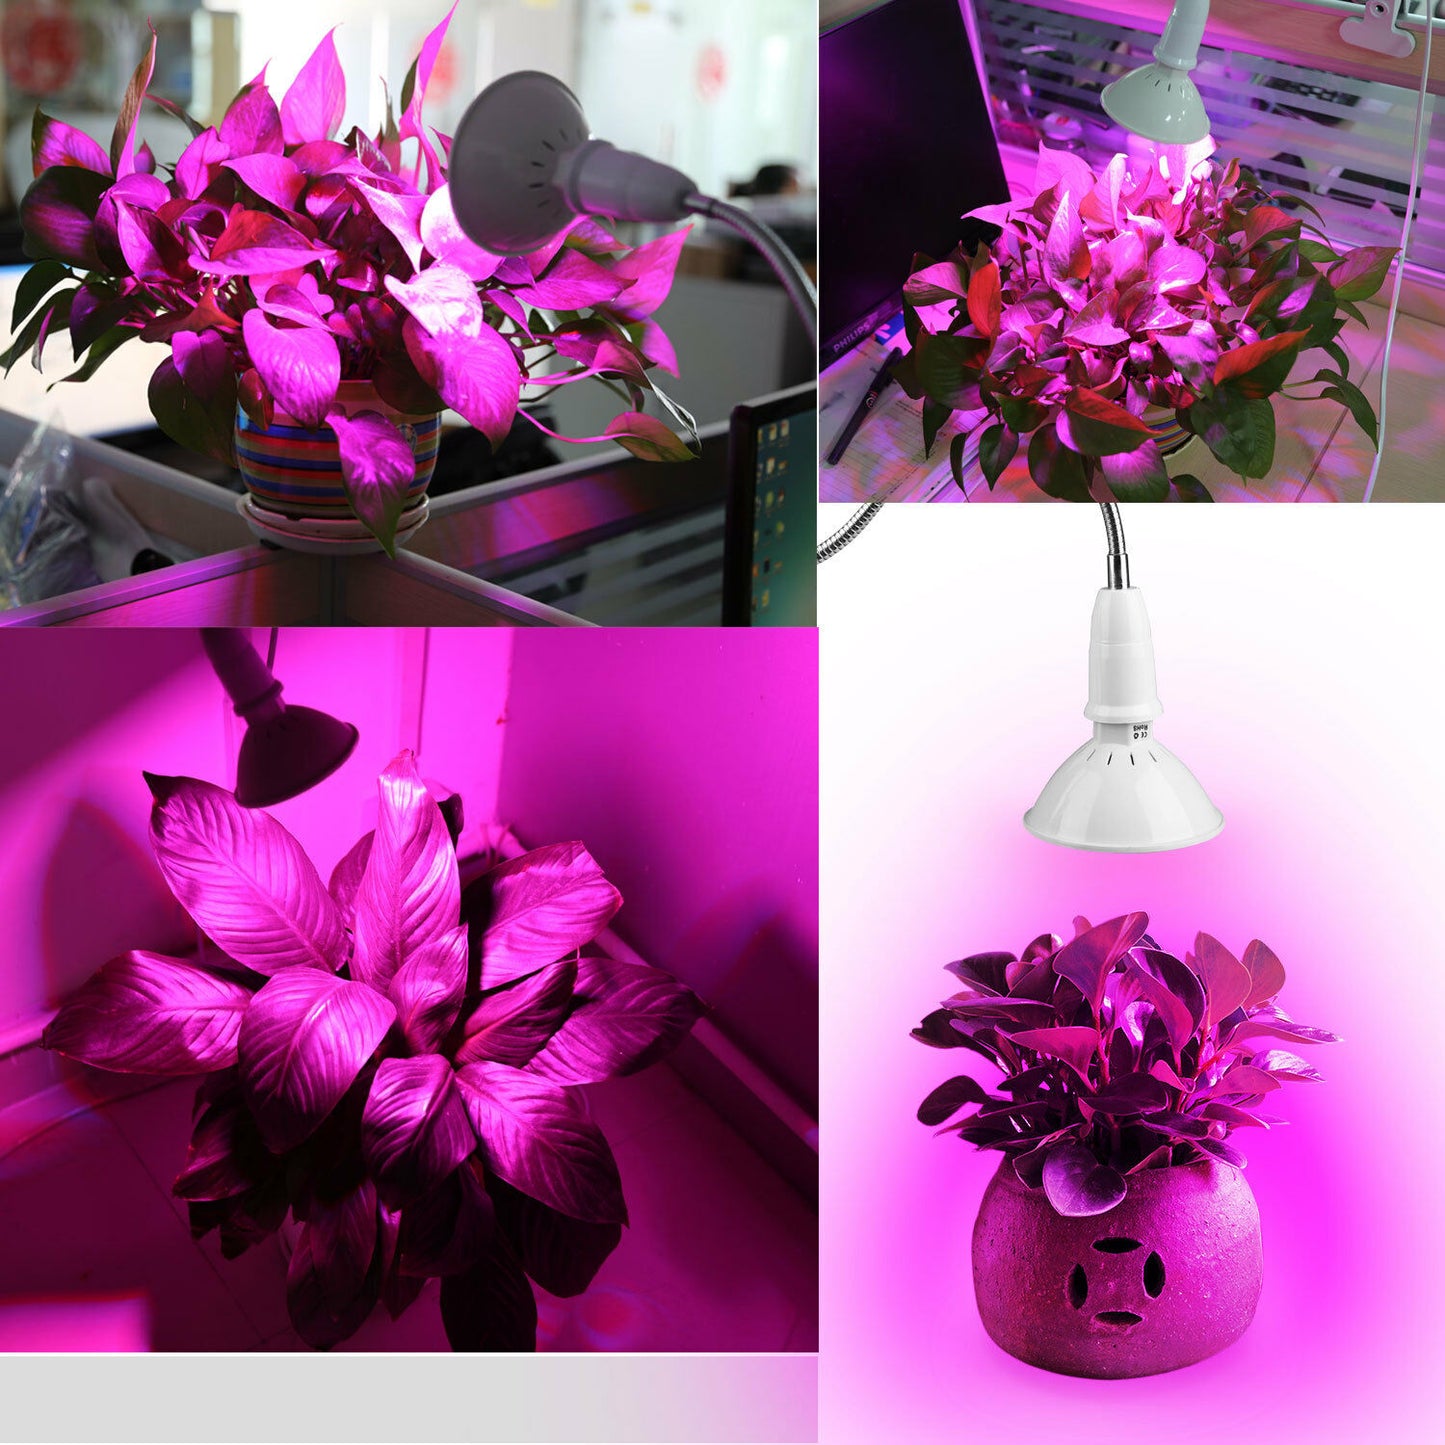 220 luces LED de cultivo bombillas de luz UV planta hidropónica de interior crecimiento vegetal espectro completo